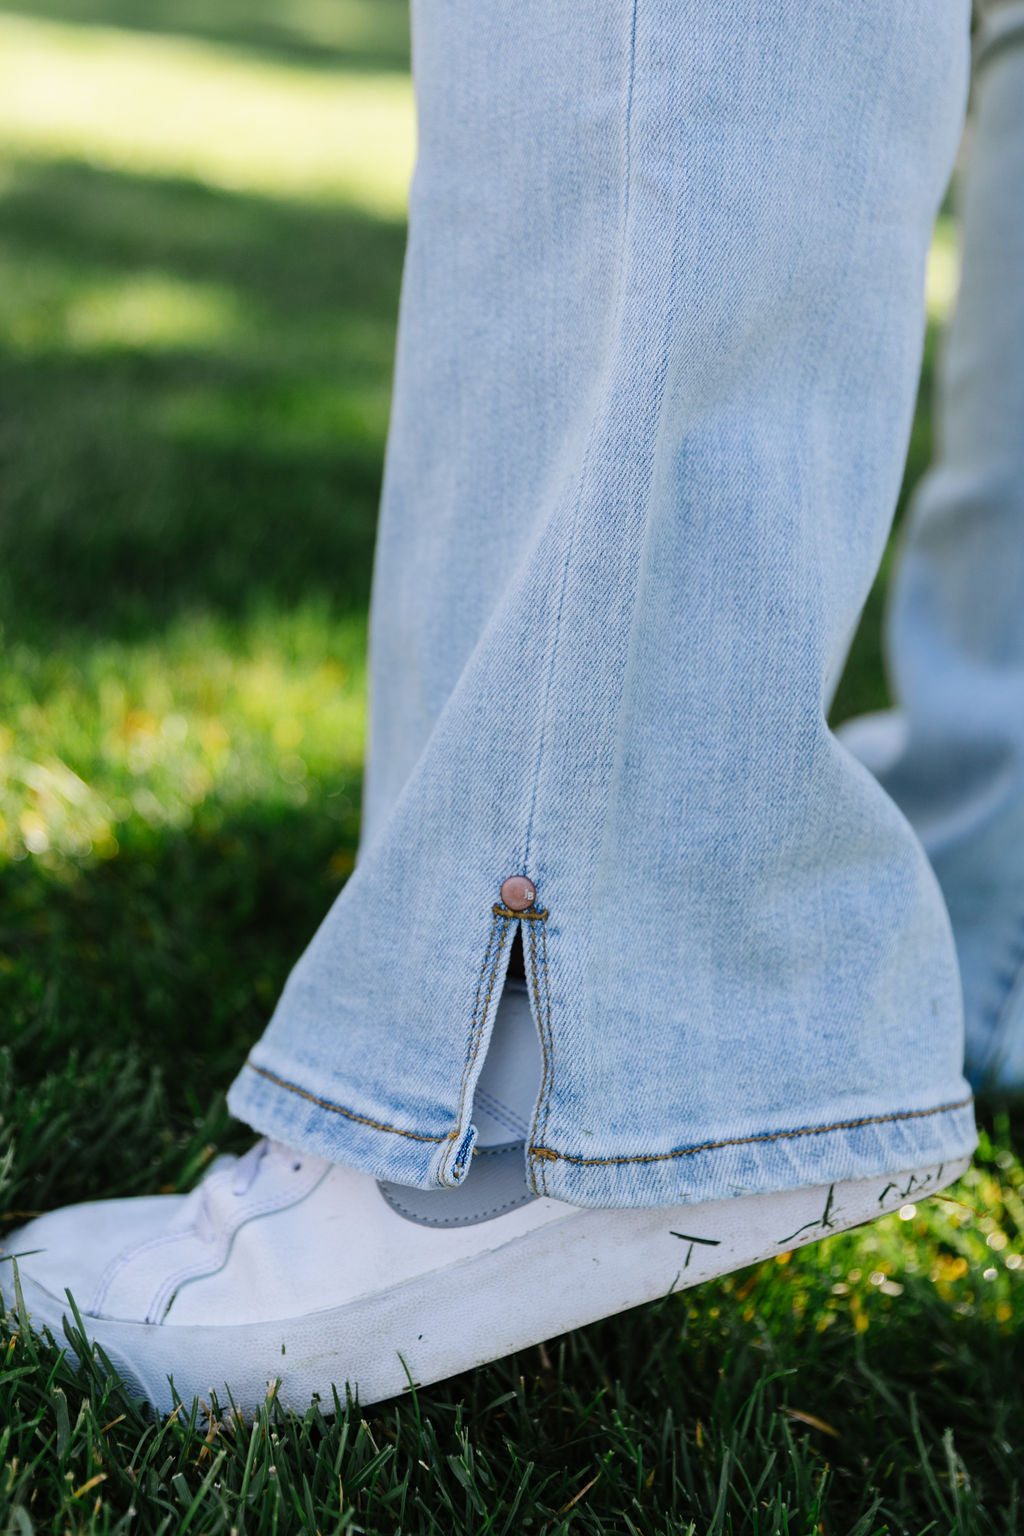 Coronado Jeans (Size 7 to 24W)